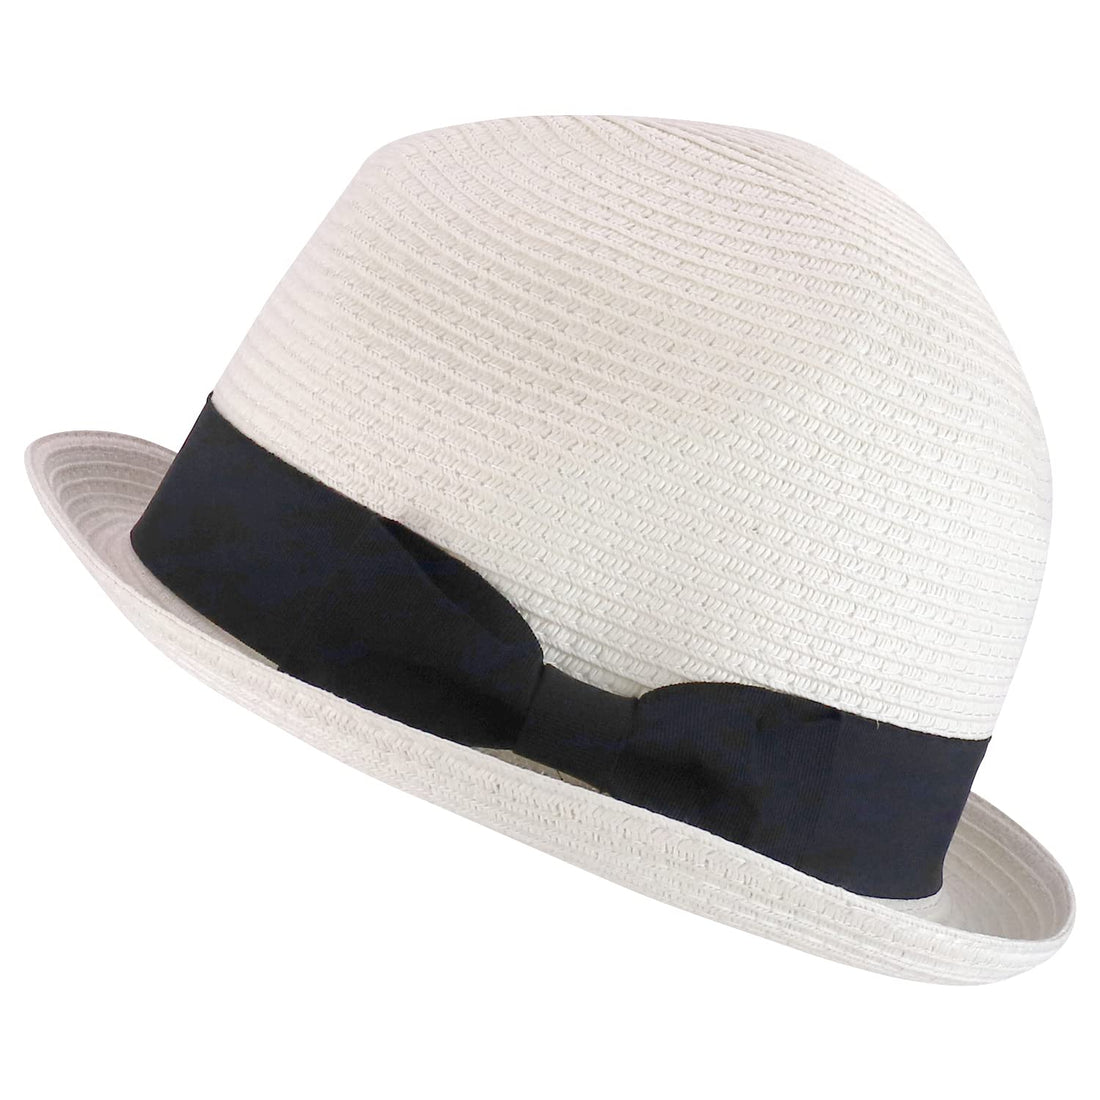 Trendy Apparel Shop Men's Toyo Paper Braid Upturn Brim Summer Fedora Hat